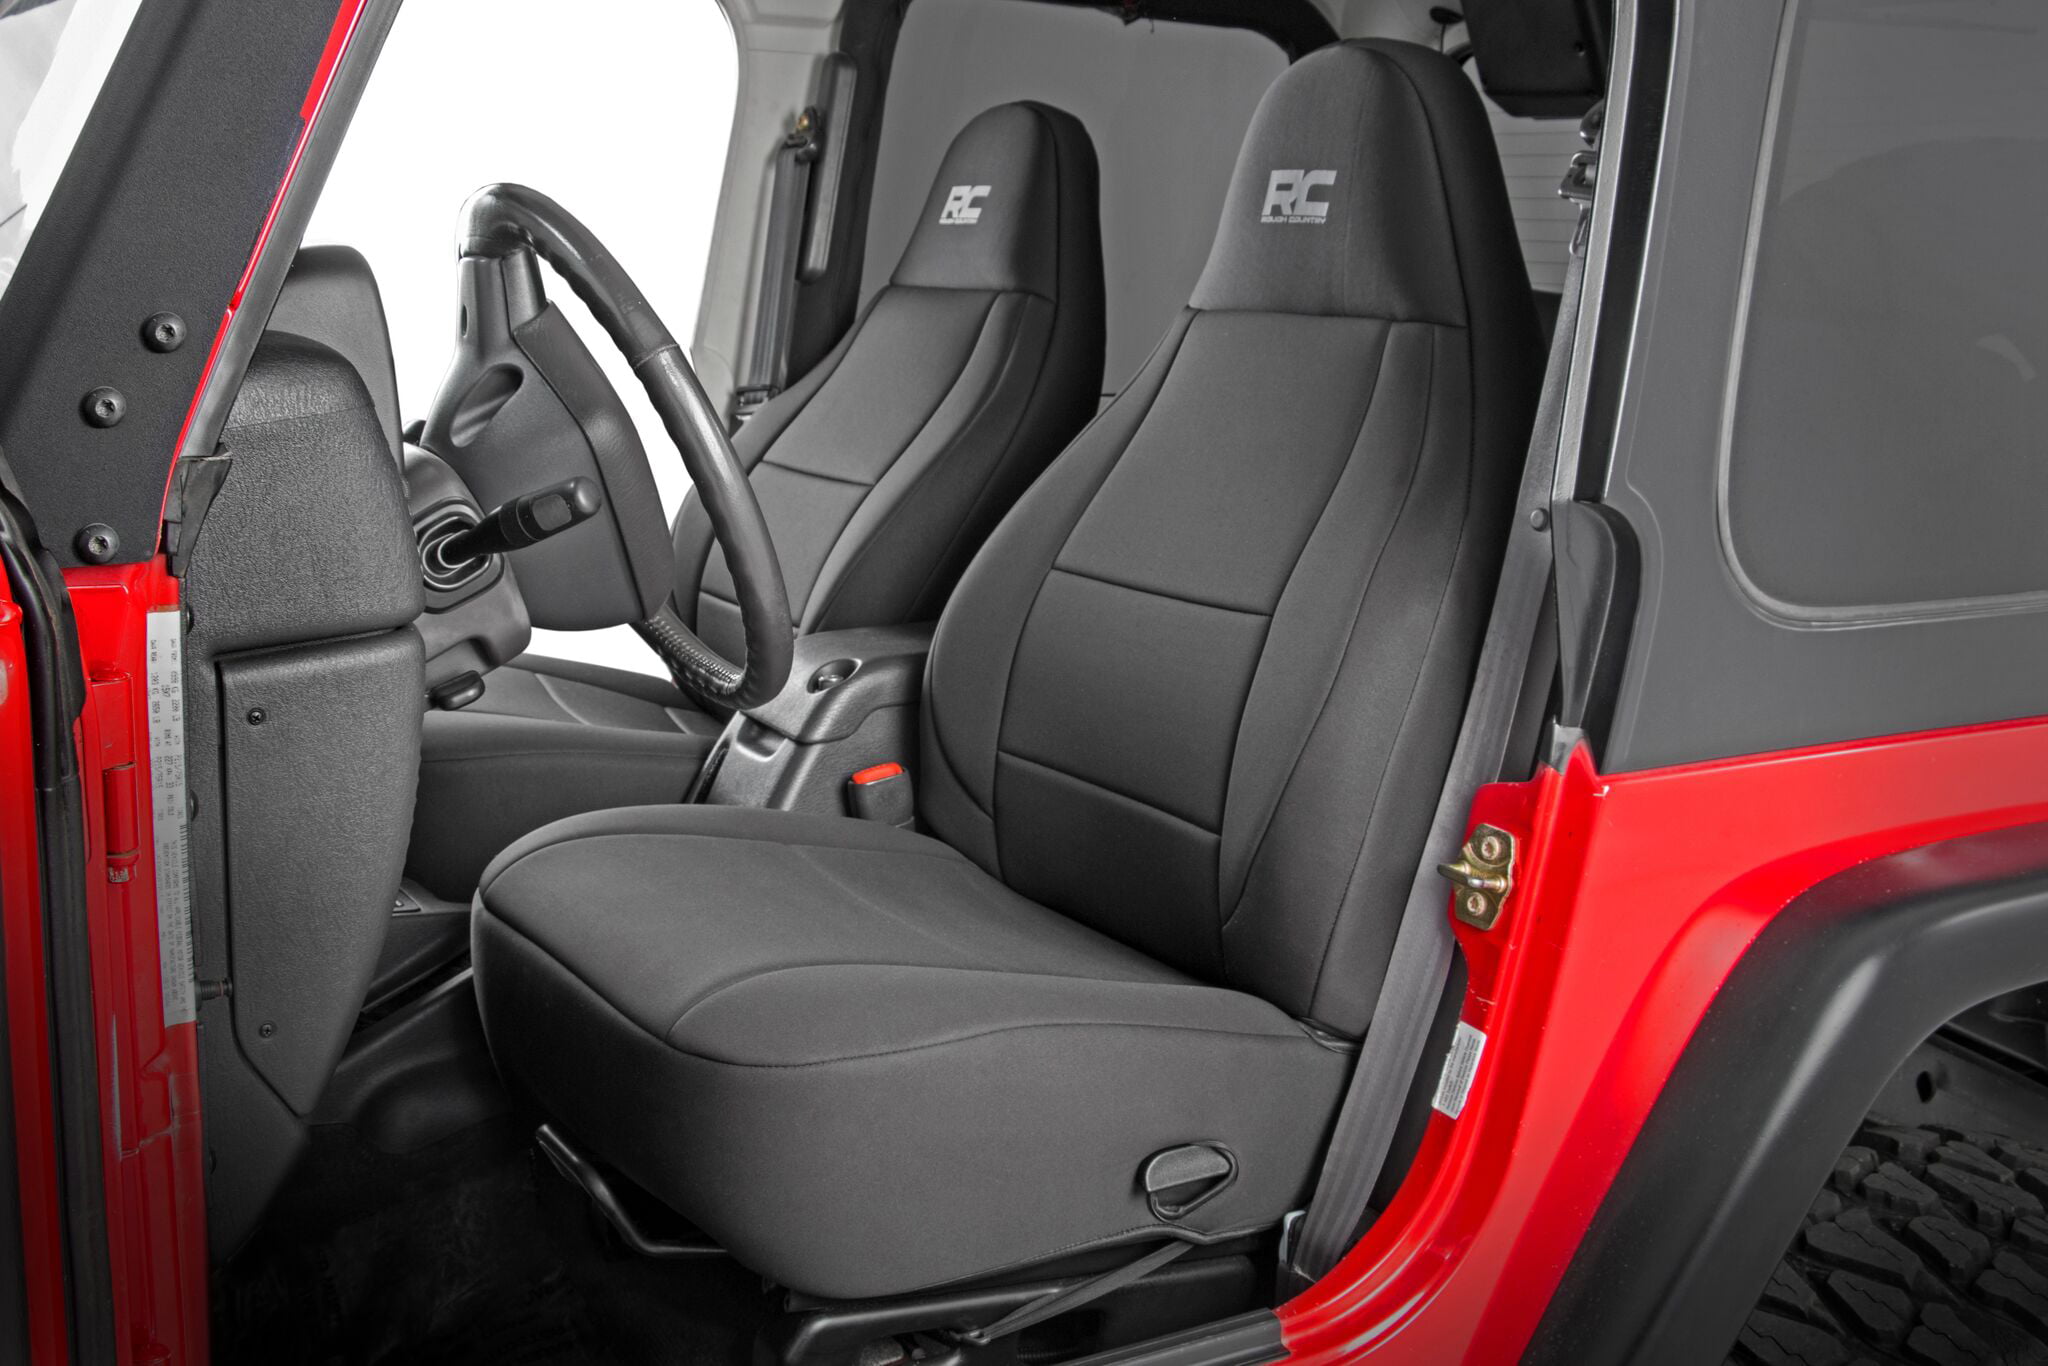 Black/Tan Neoprene Rear Seat Cover Fits 1997-2002 Jeep TJ Wrangler 13261.04